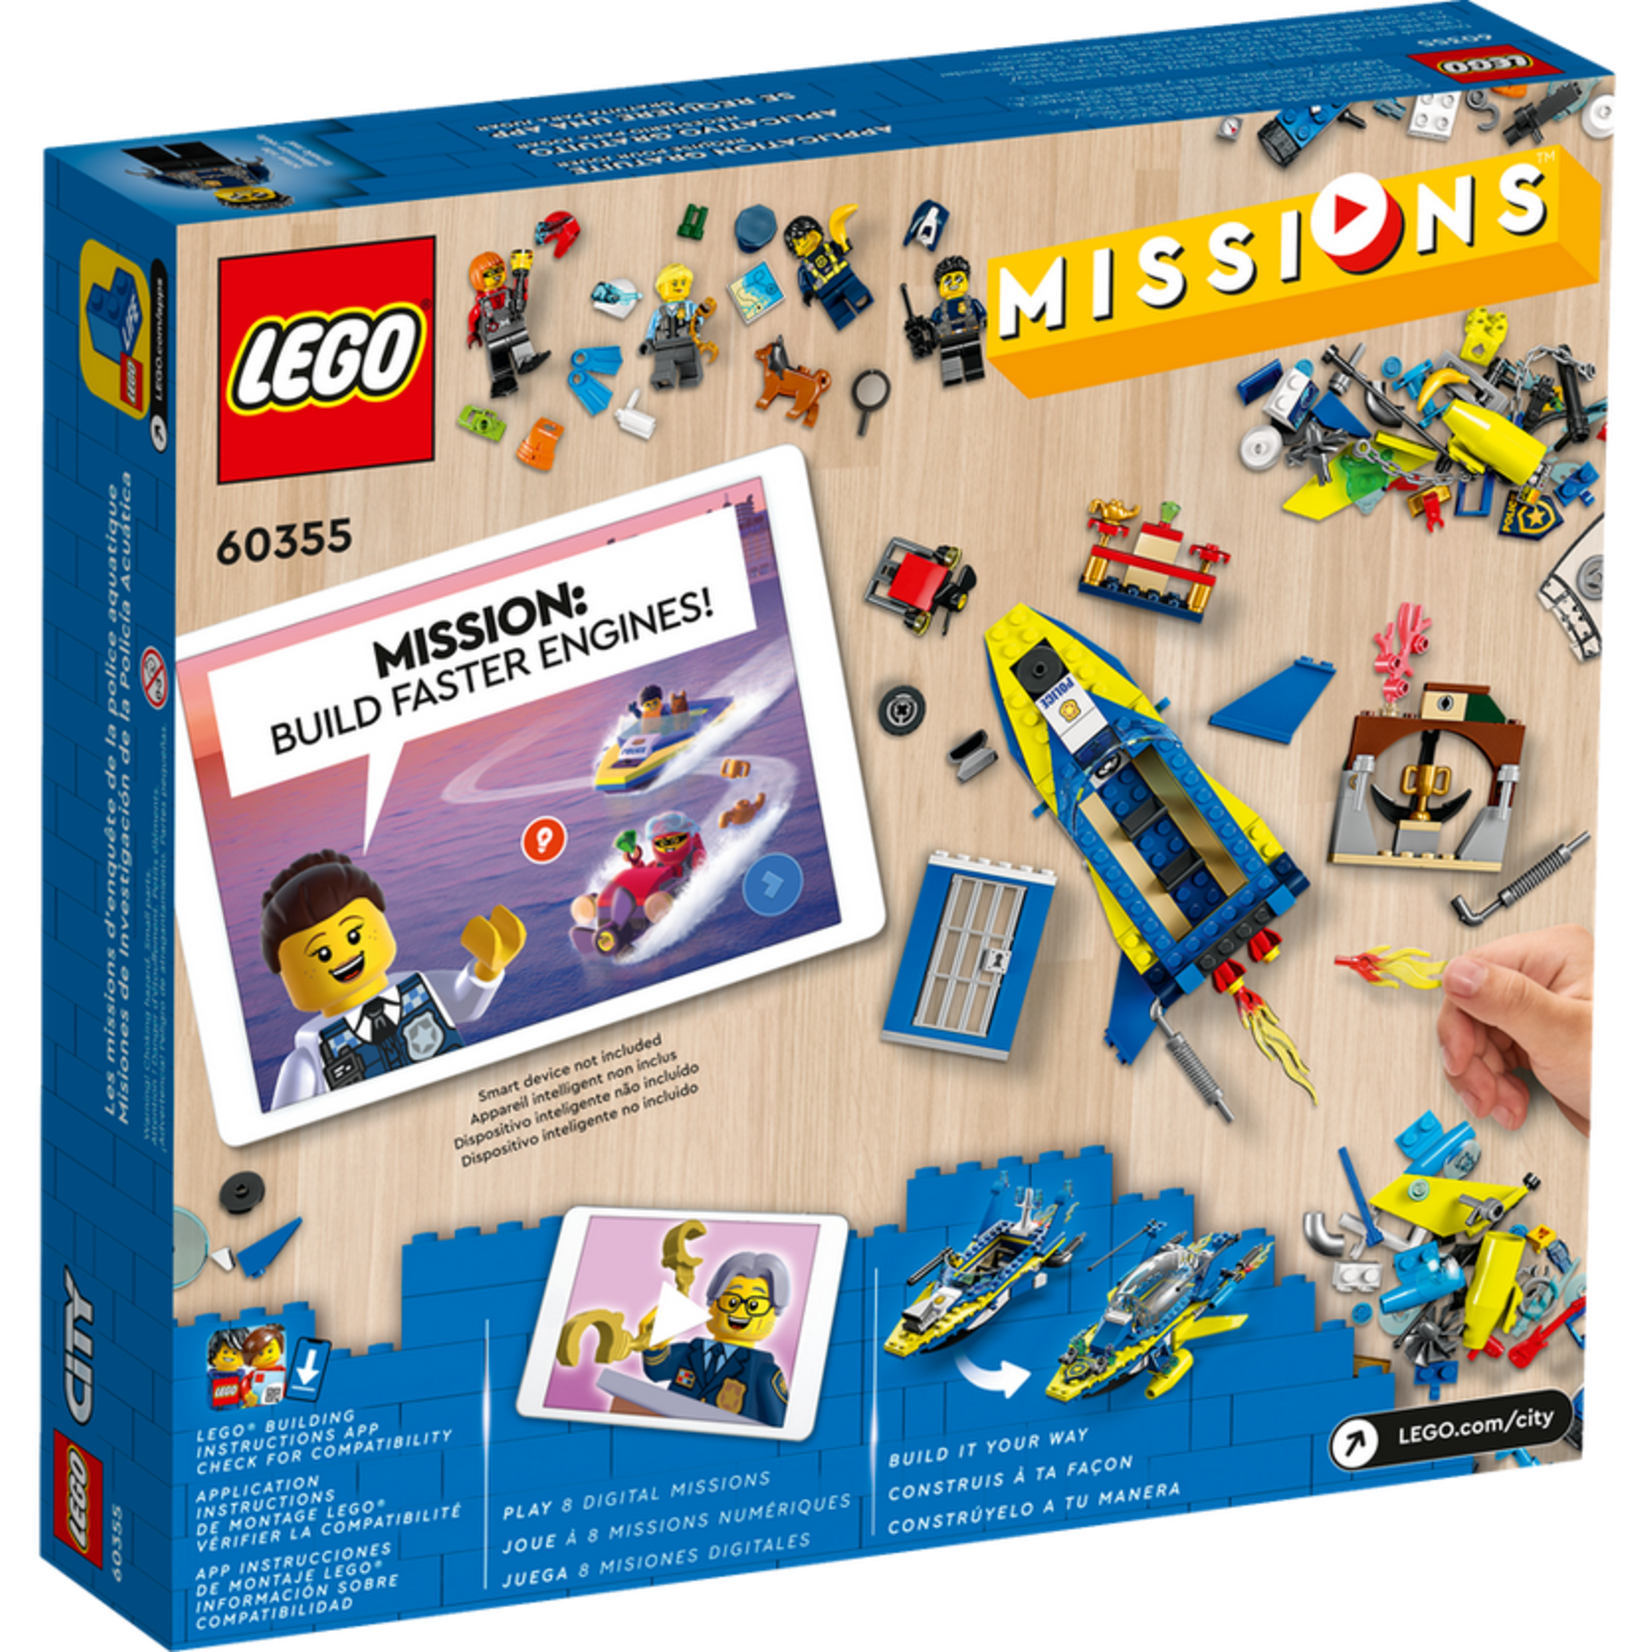 Lego *****Lego 60355 City - Les missions d'enquête de la police aquatique